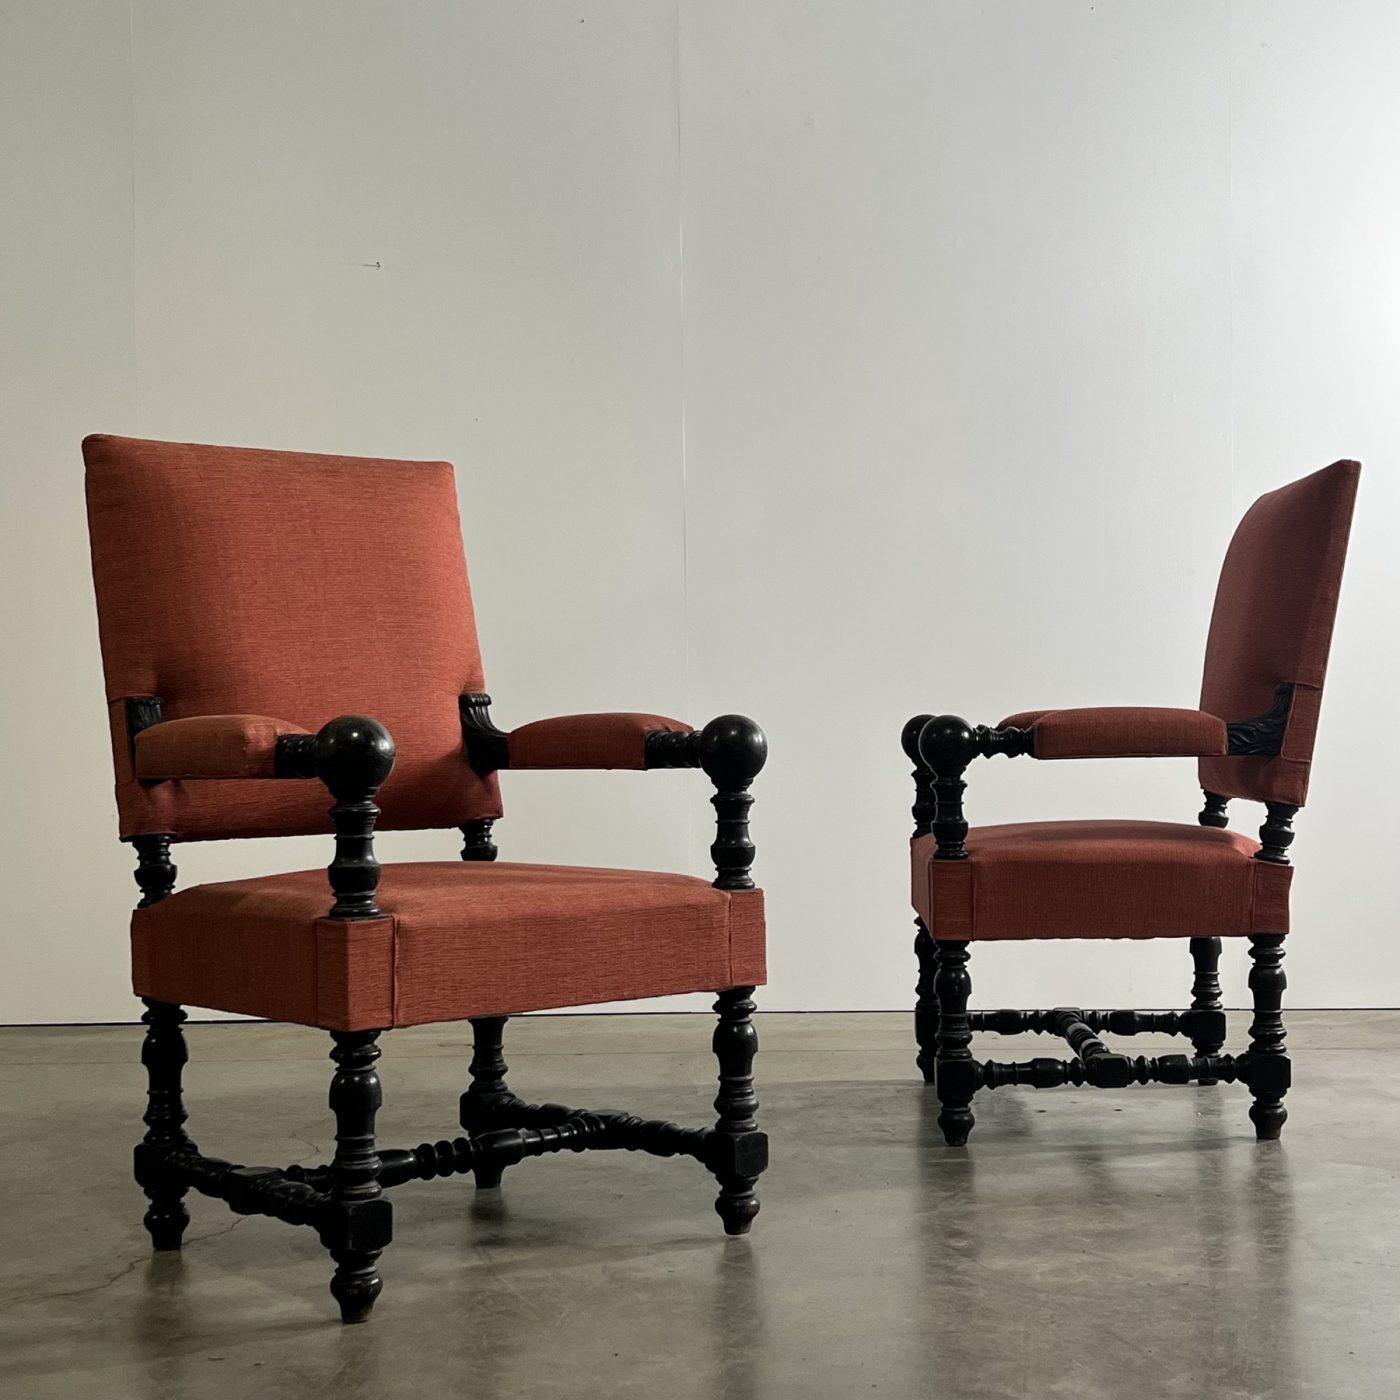 objet-vagabond-napoleon3-armchairs0007